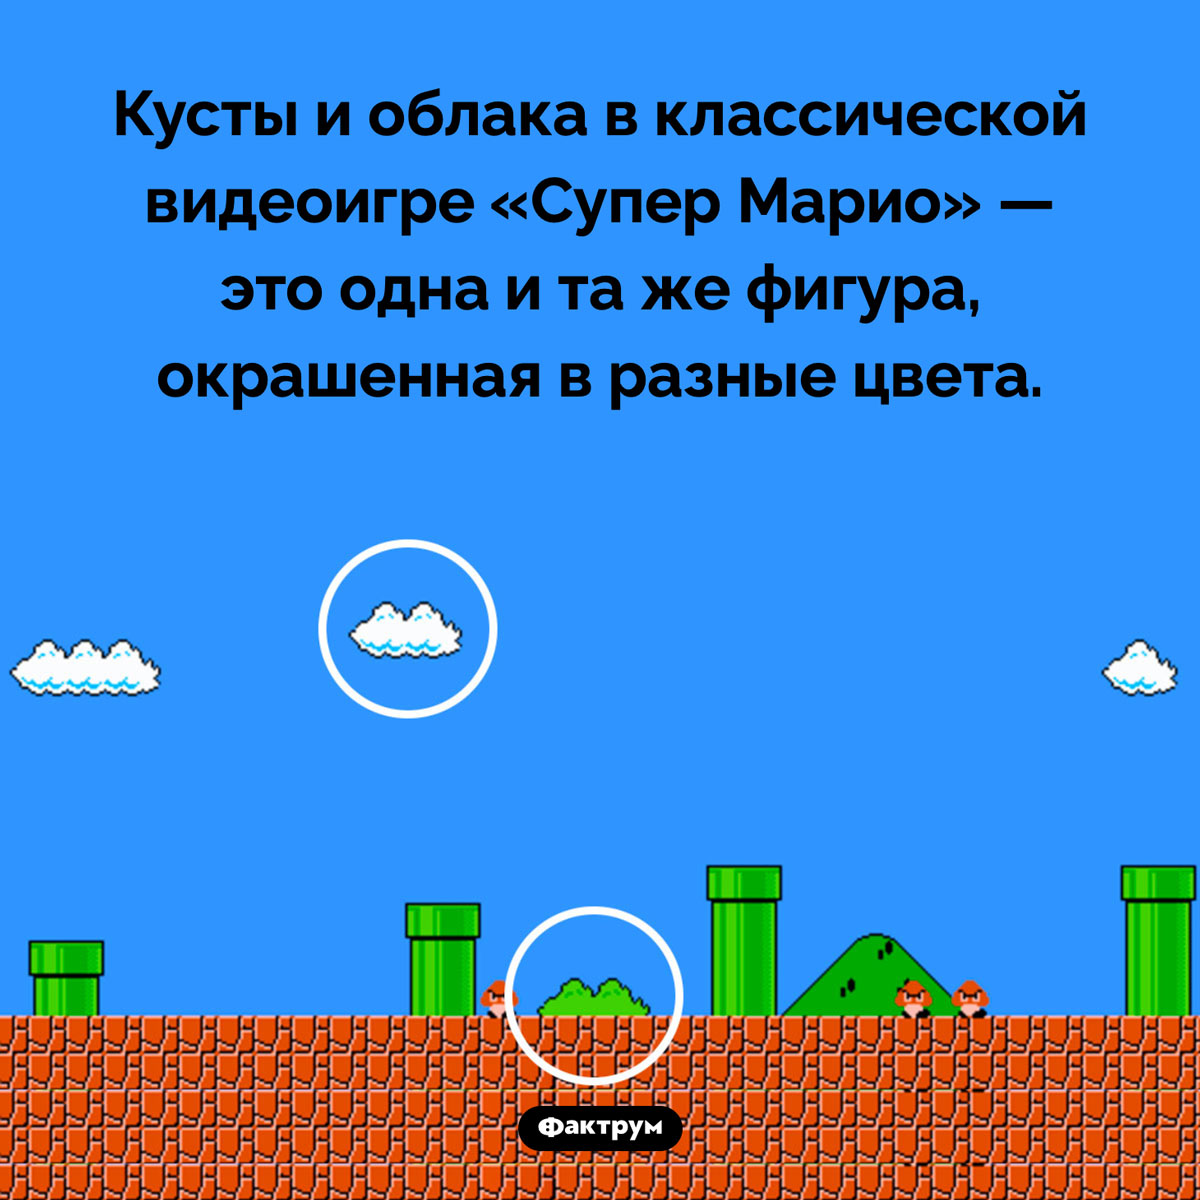 Экономный гейм-дизайн «Супер Марио». Кусты и облака в классической видеоигре «Супер Марио» — это одна и та же фигура, окрашенная в разные цвета.